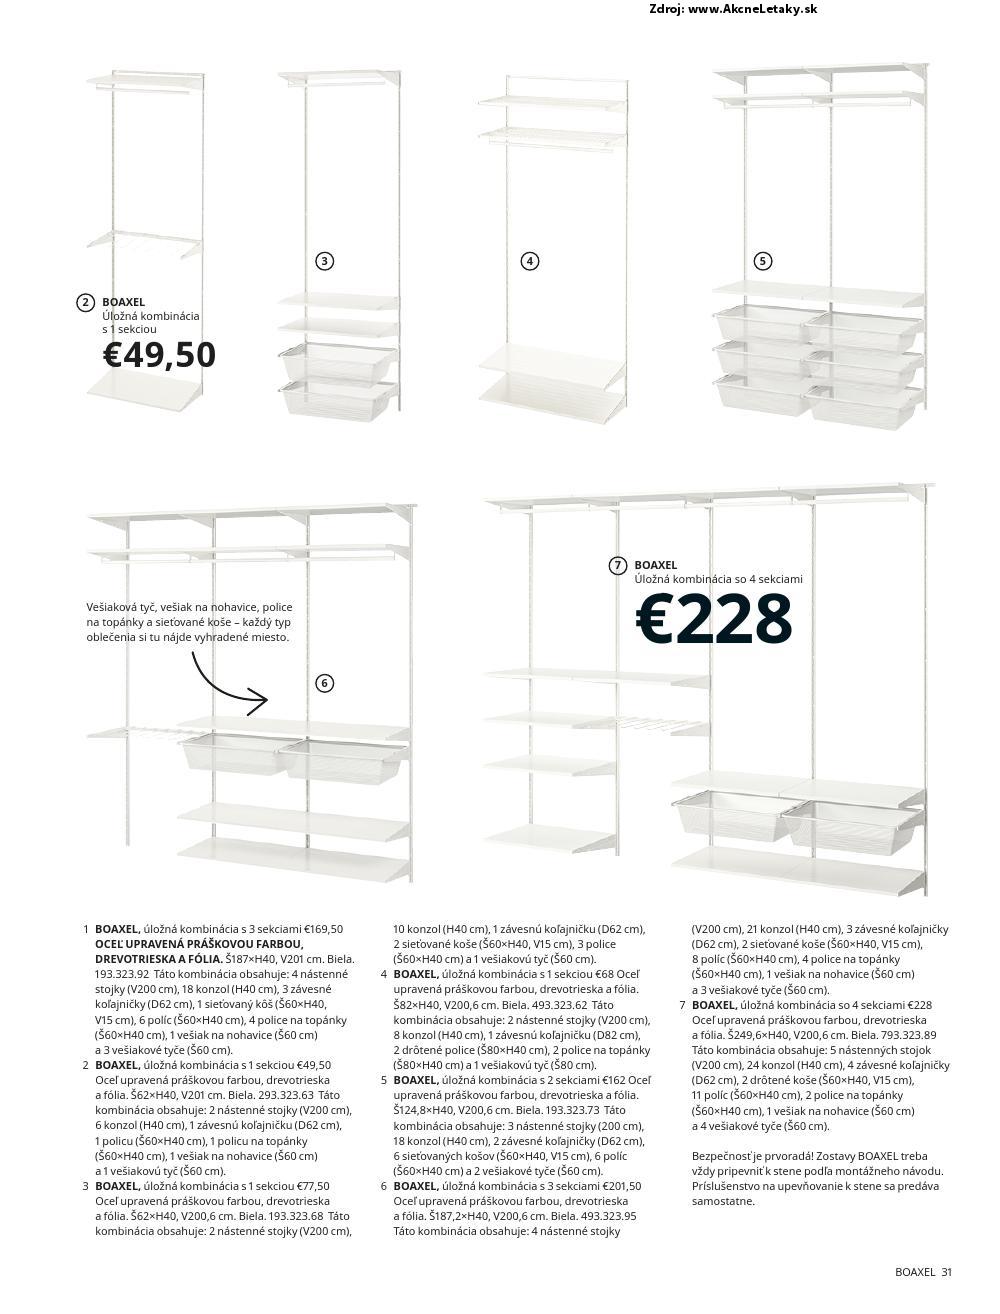 Letk Ikea - strana 31